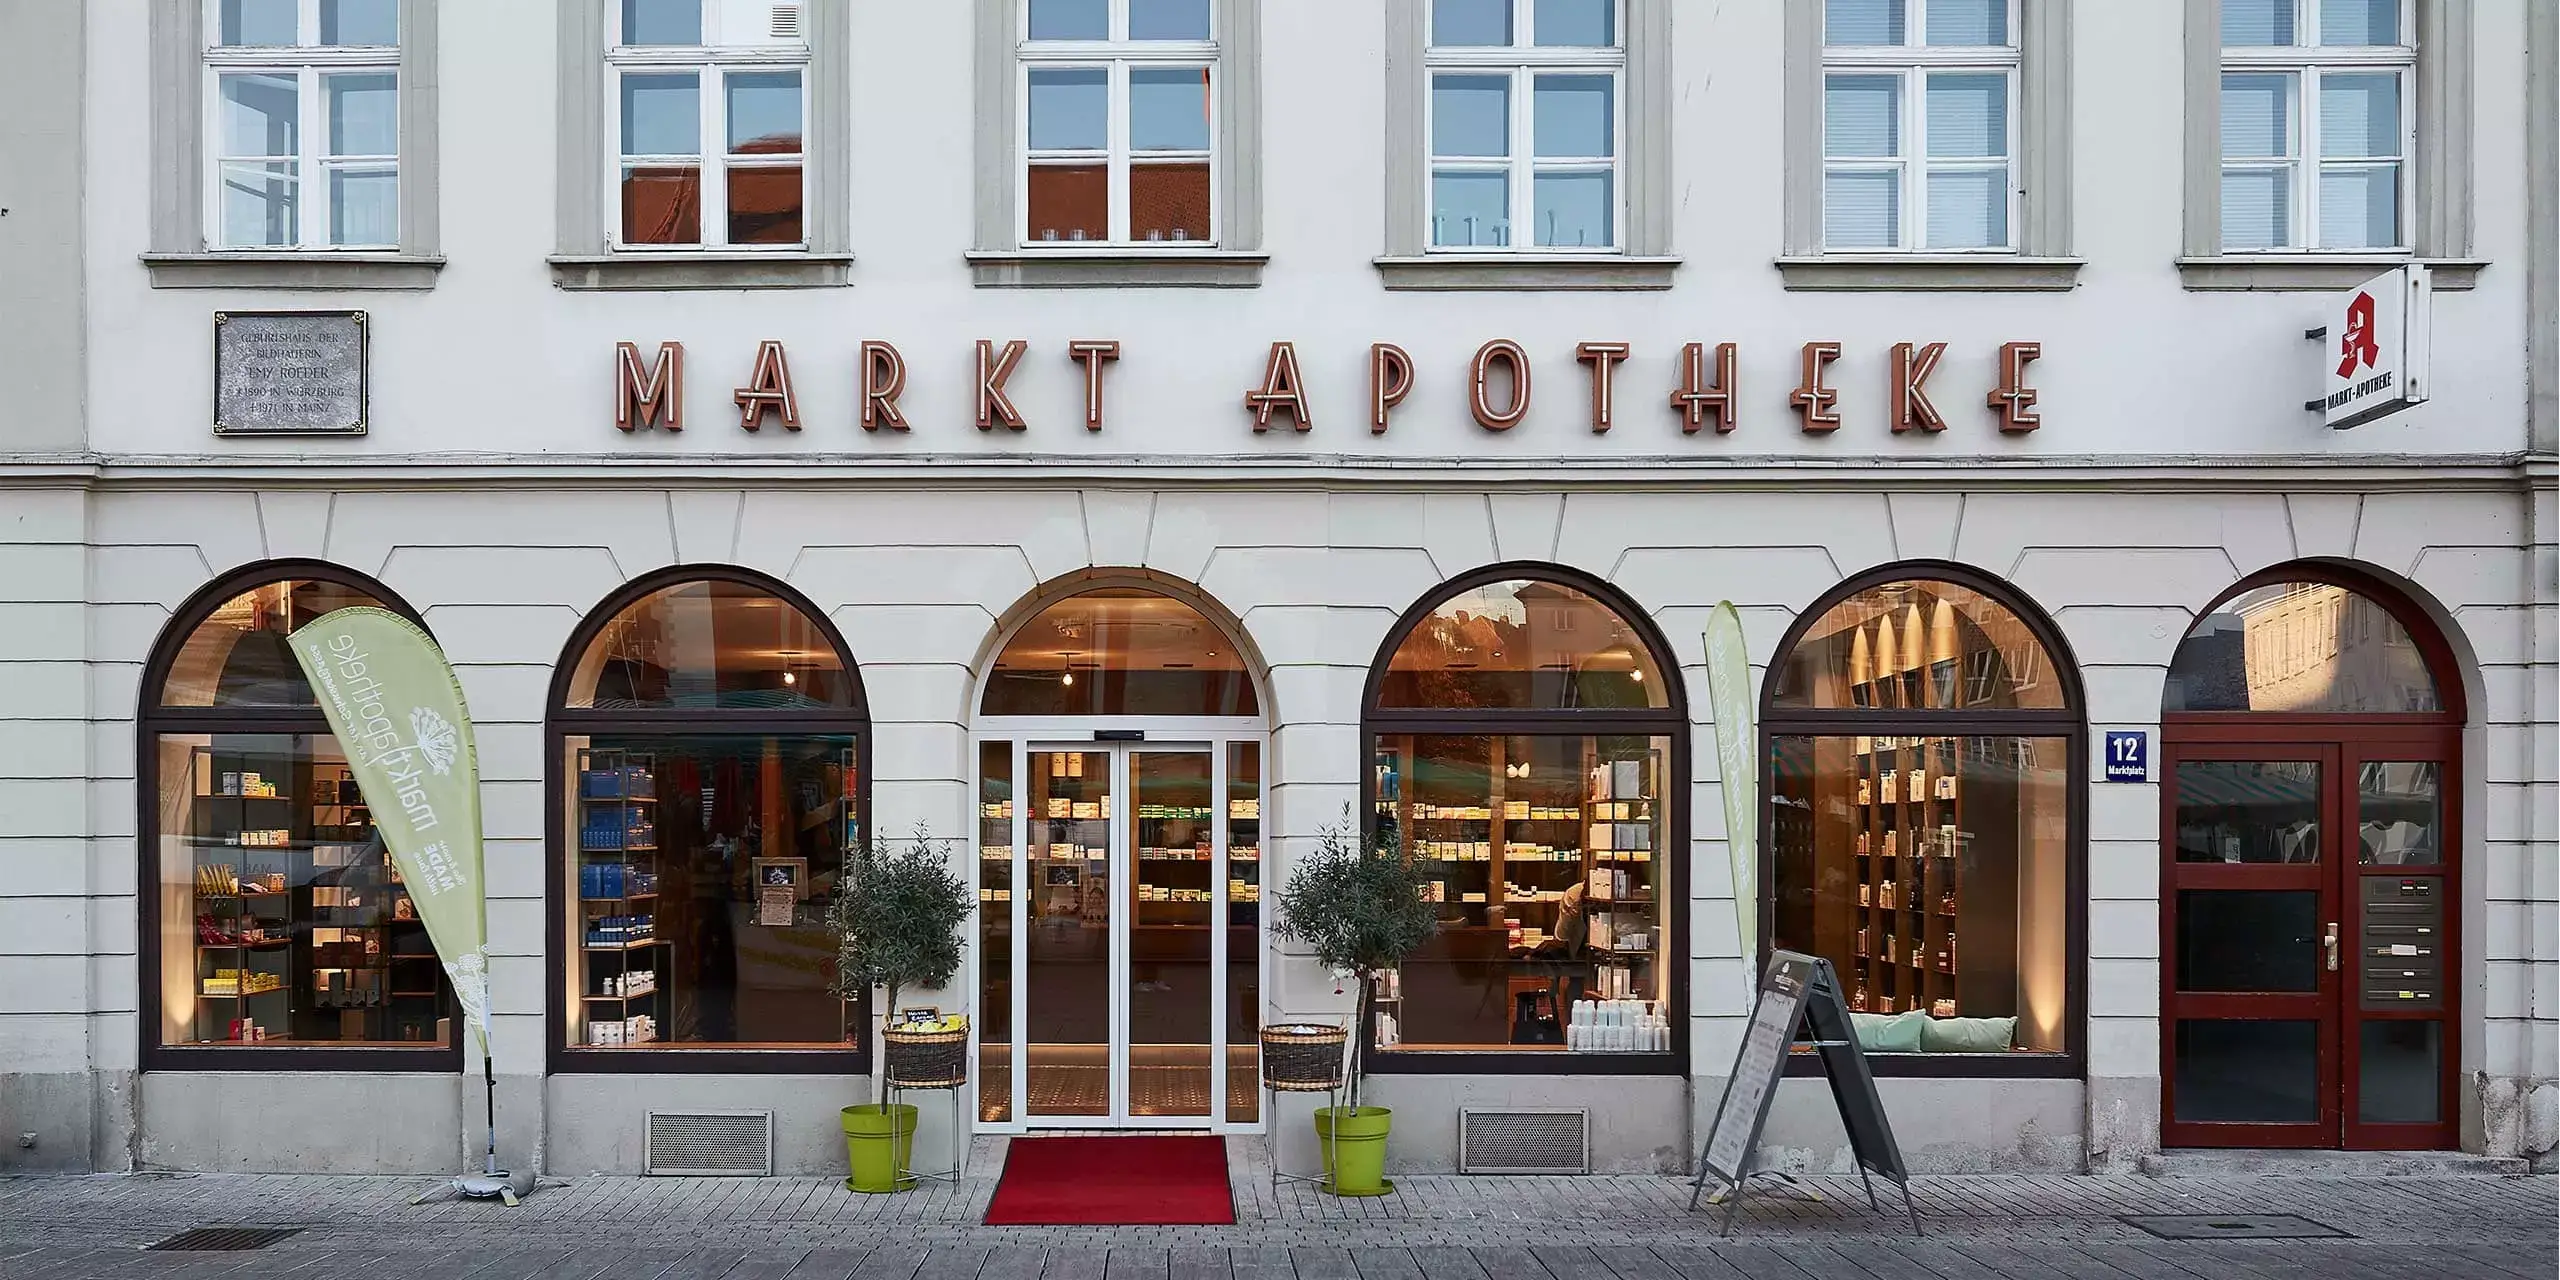 Markt Apotheke Würzburg – Außenfassade